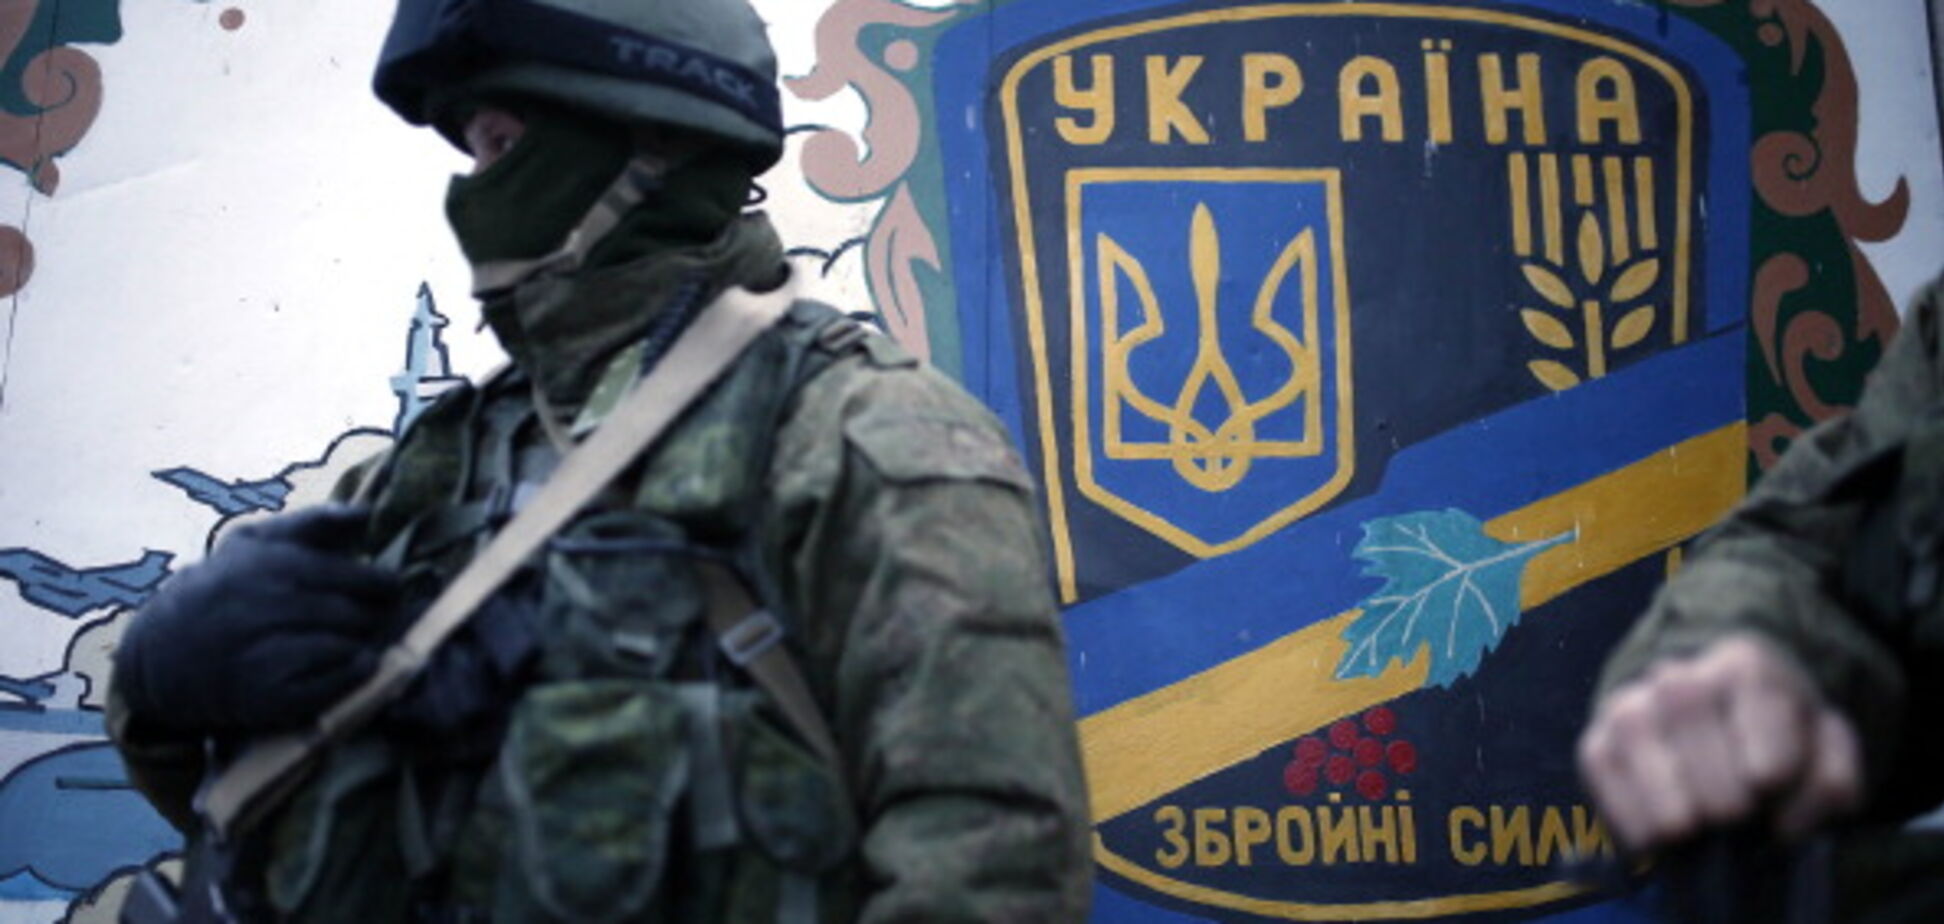 Селезнев назвал наиболее эффективный способ возвращения Крыма